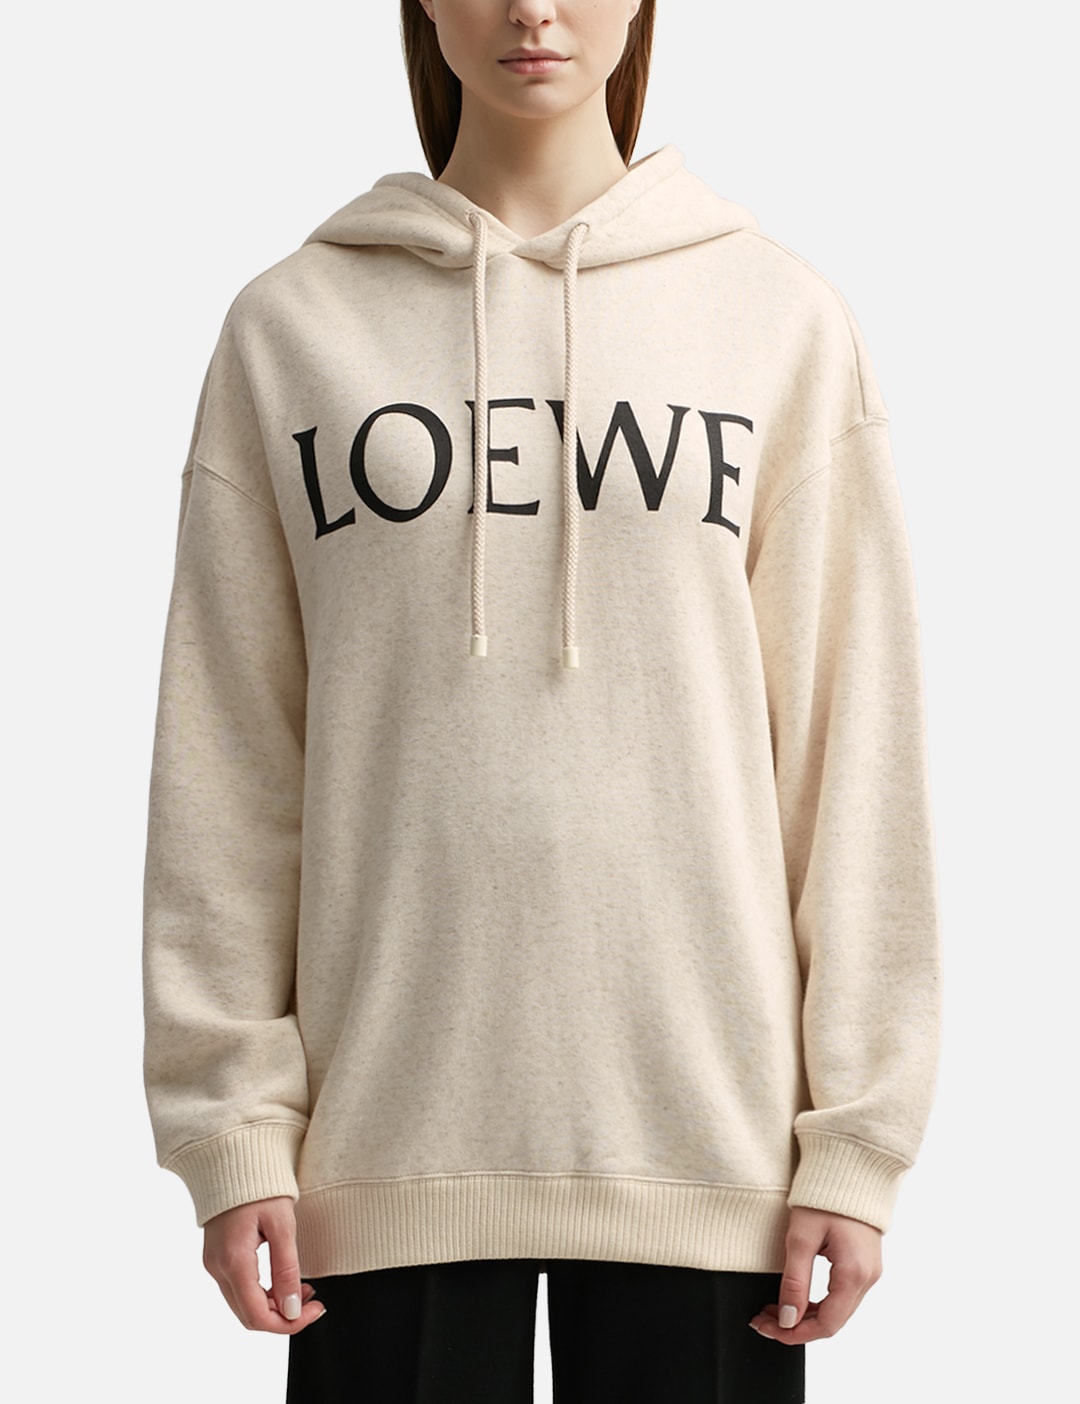 Loewe Oversized Hoodie